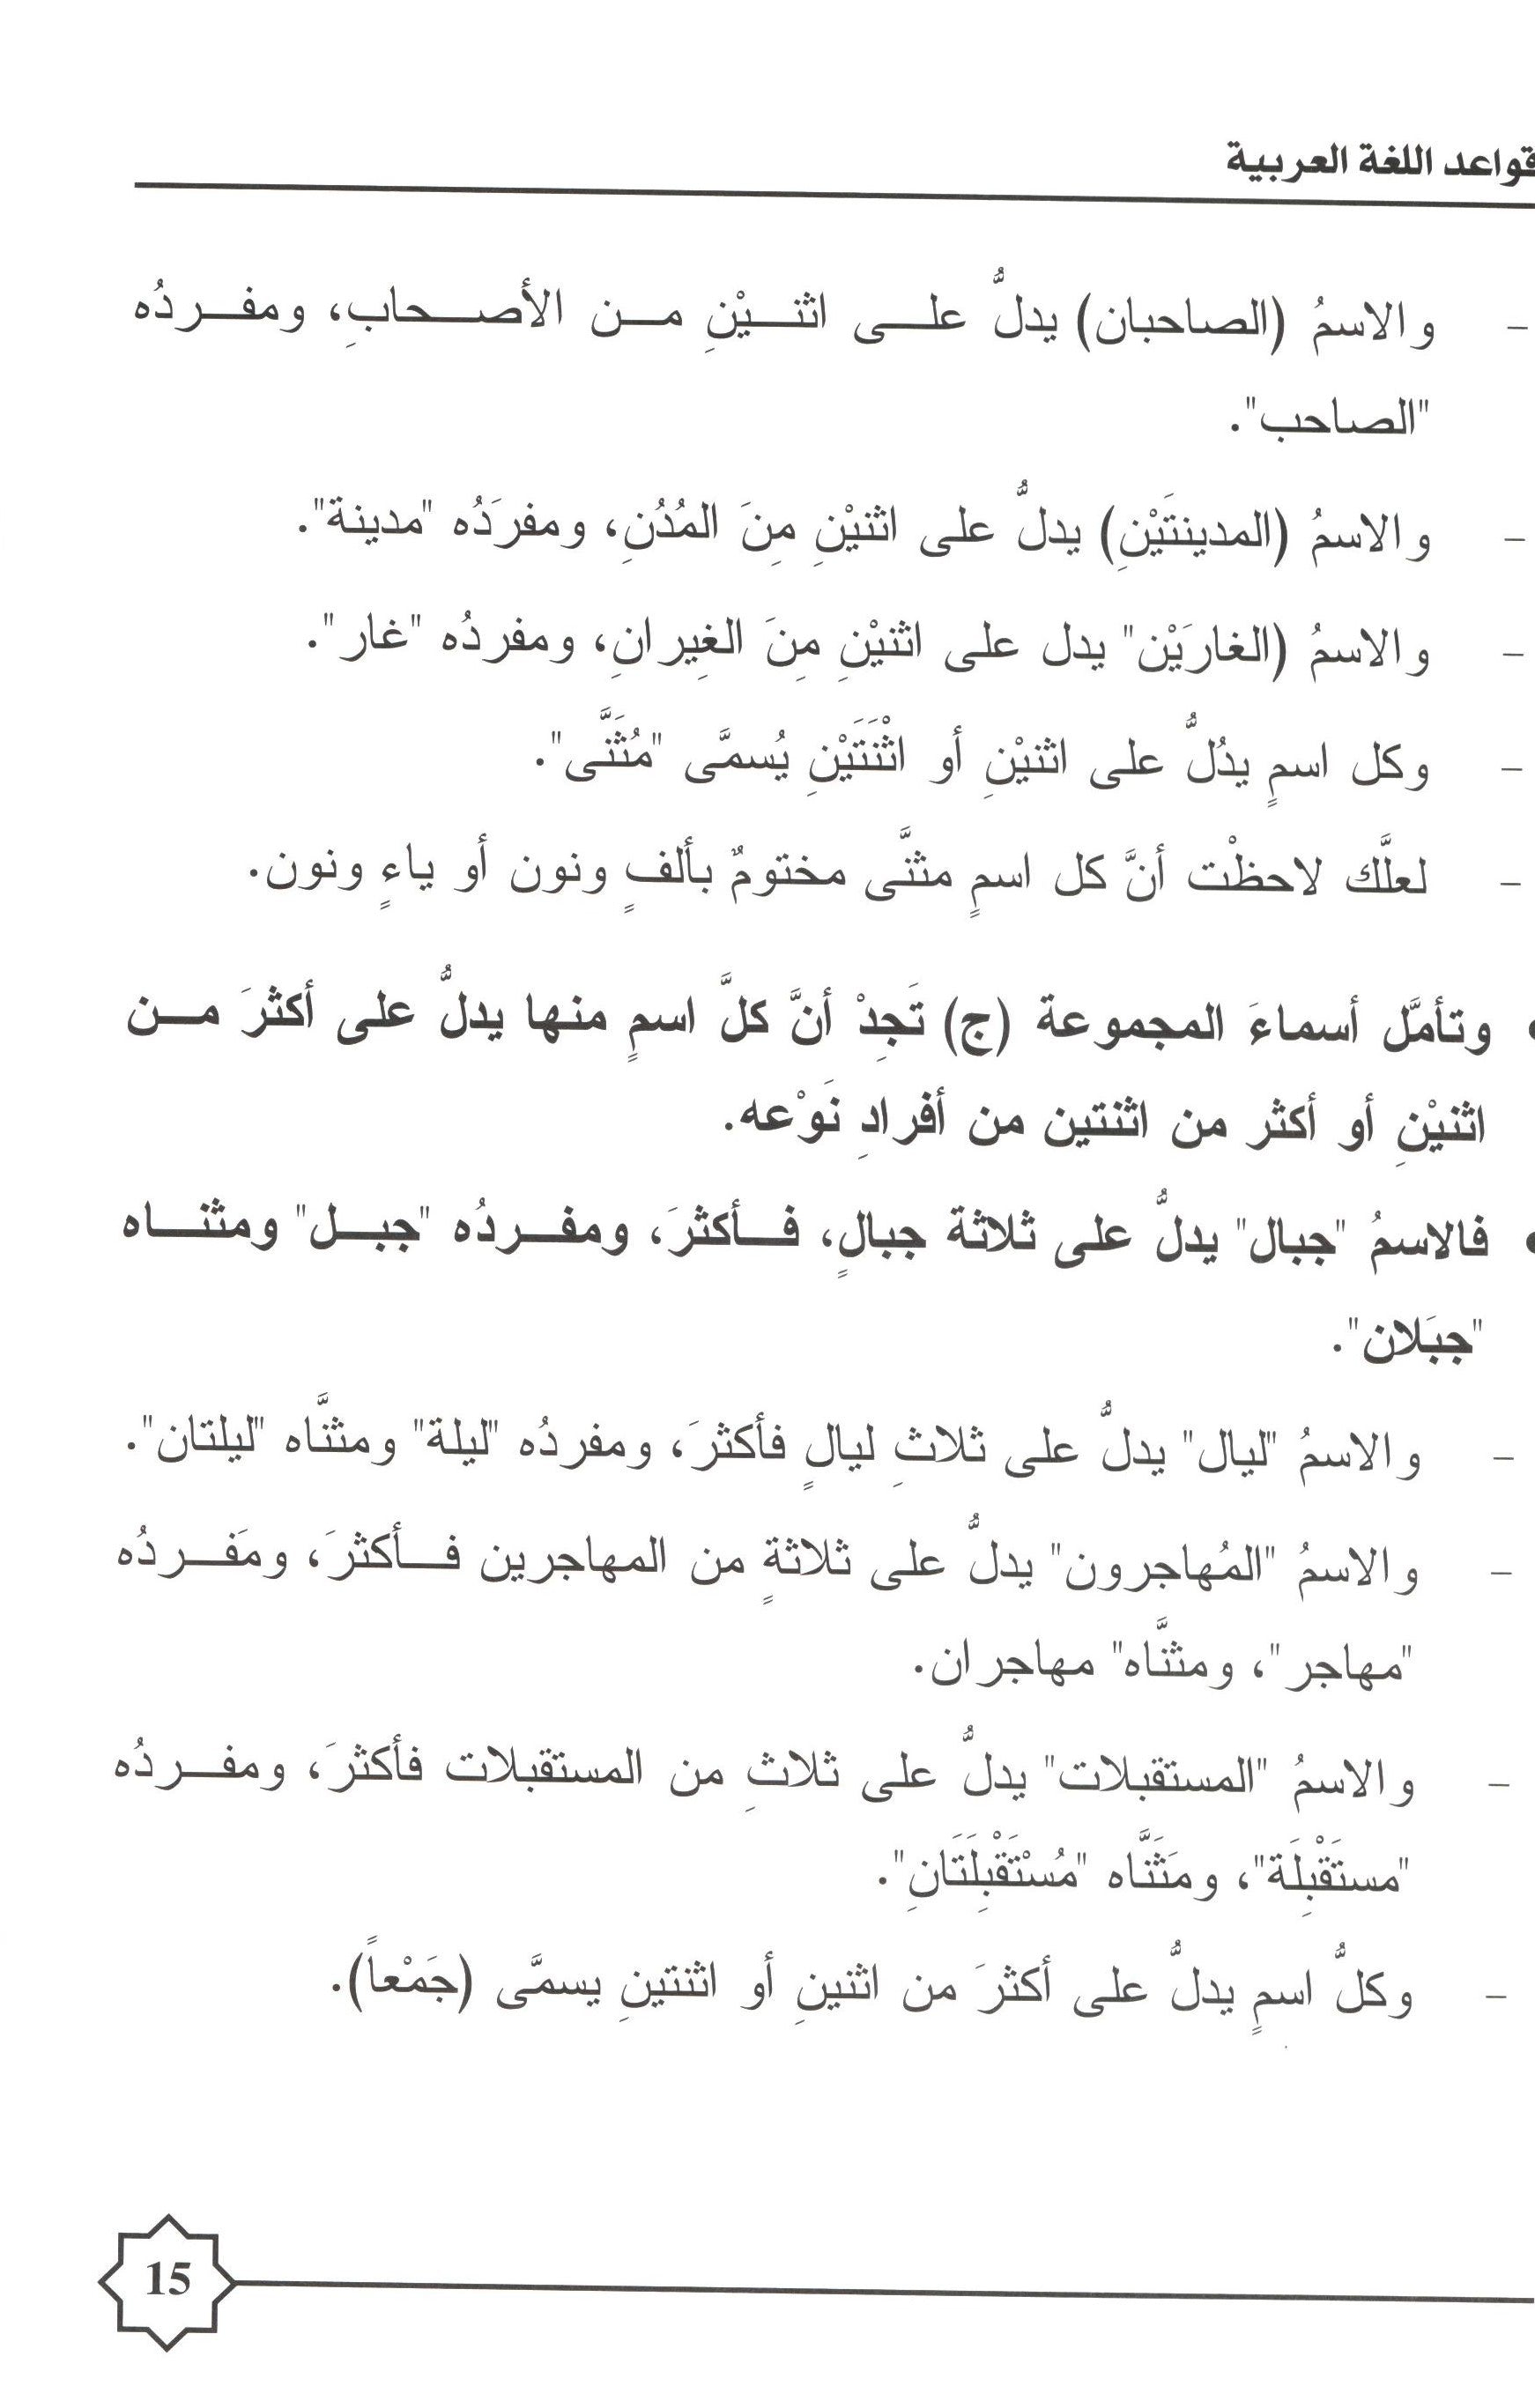 Al-Rowad Arabic Grammar Level 2 Part 1 تدريبات في قواعد اللّغة العربيّة